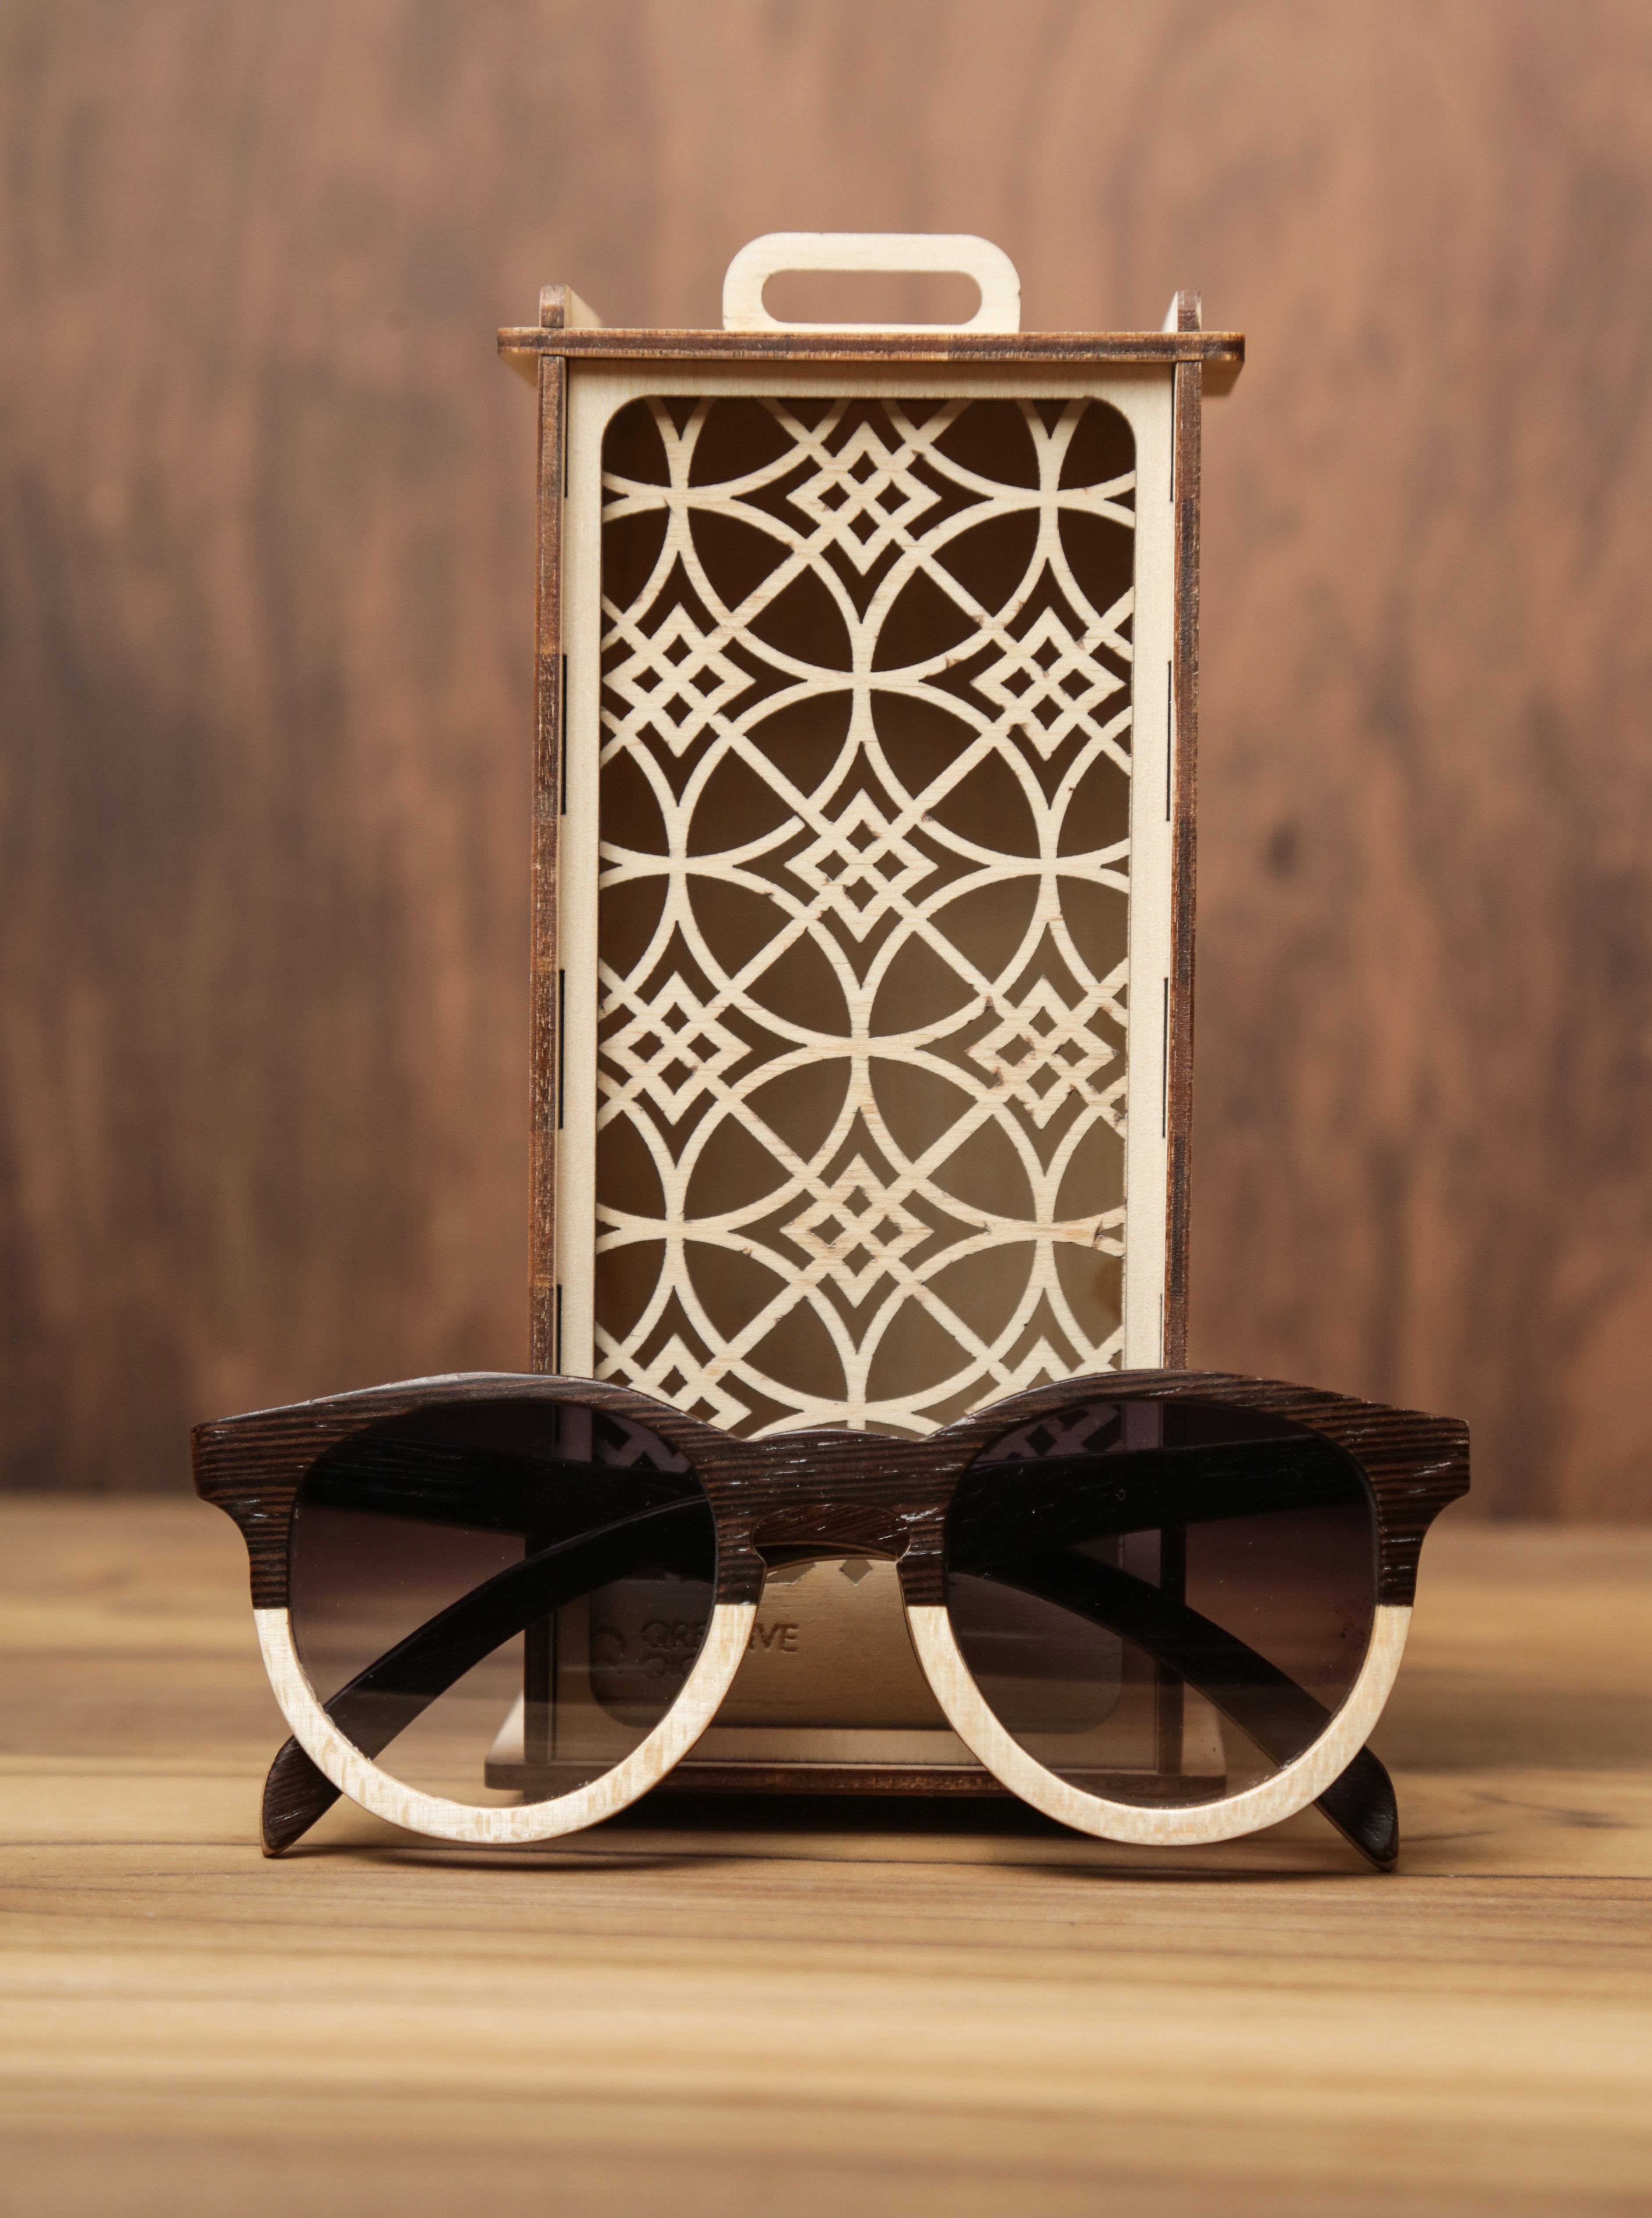 Sonnet Dual-tone | Wooden Sunglasses | Wood Prescription Frame | QQ frames